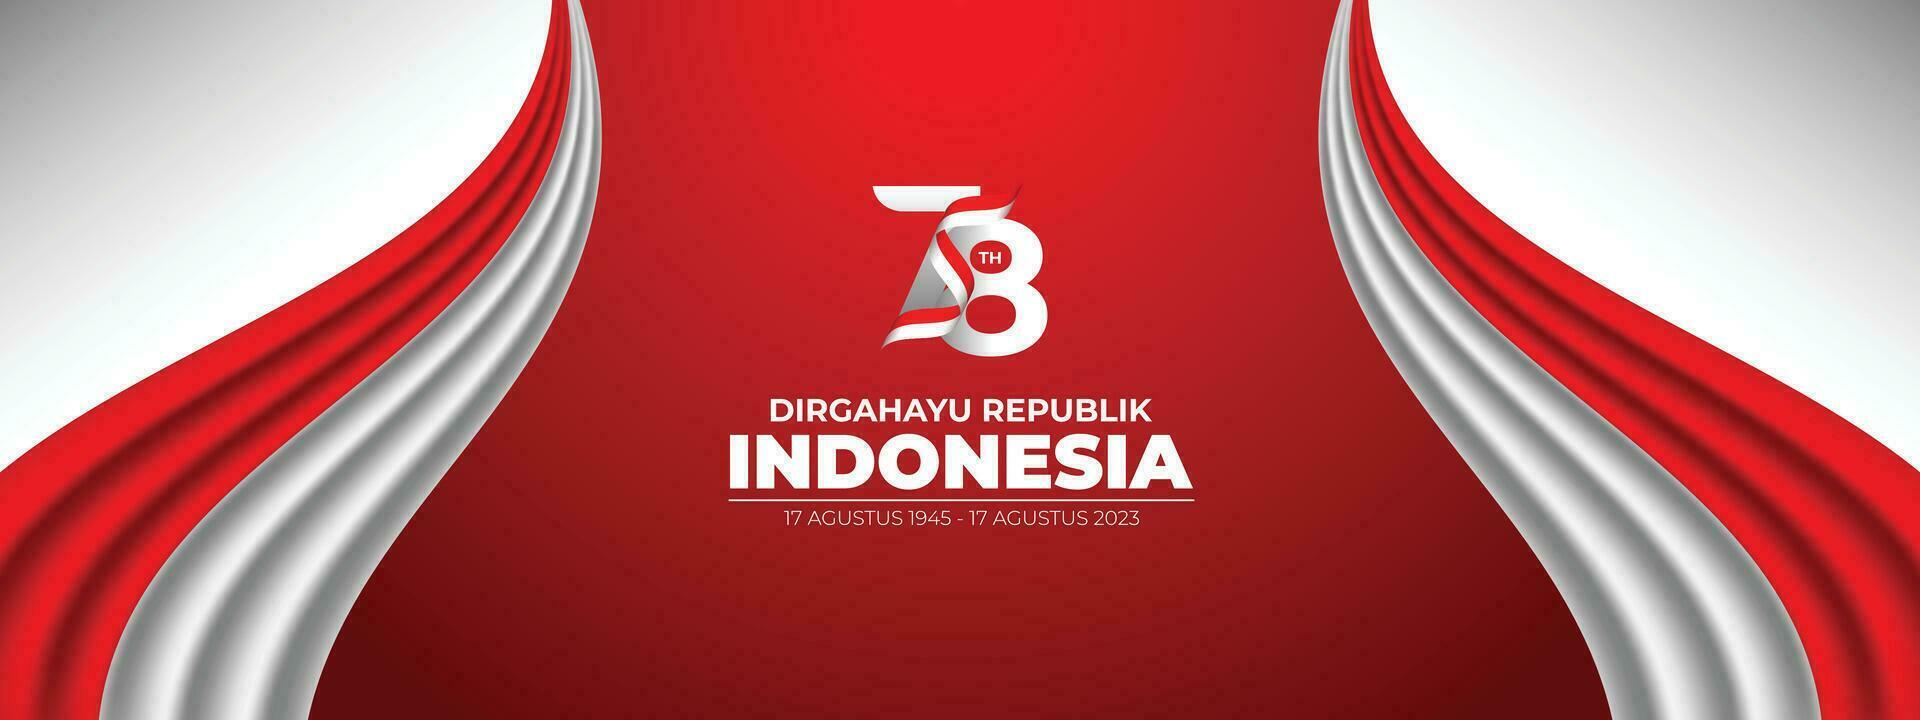 dirgahayu republik Indonesia bandera con bandera vector